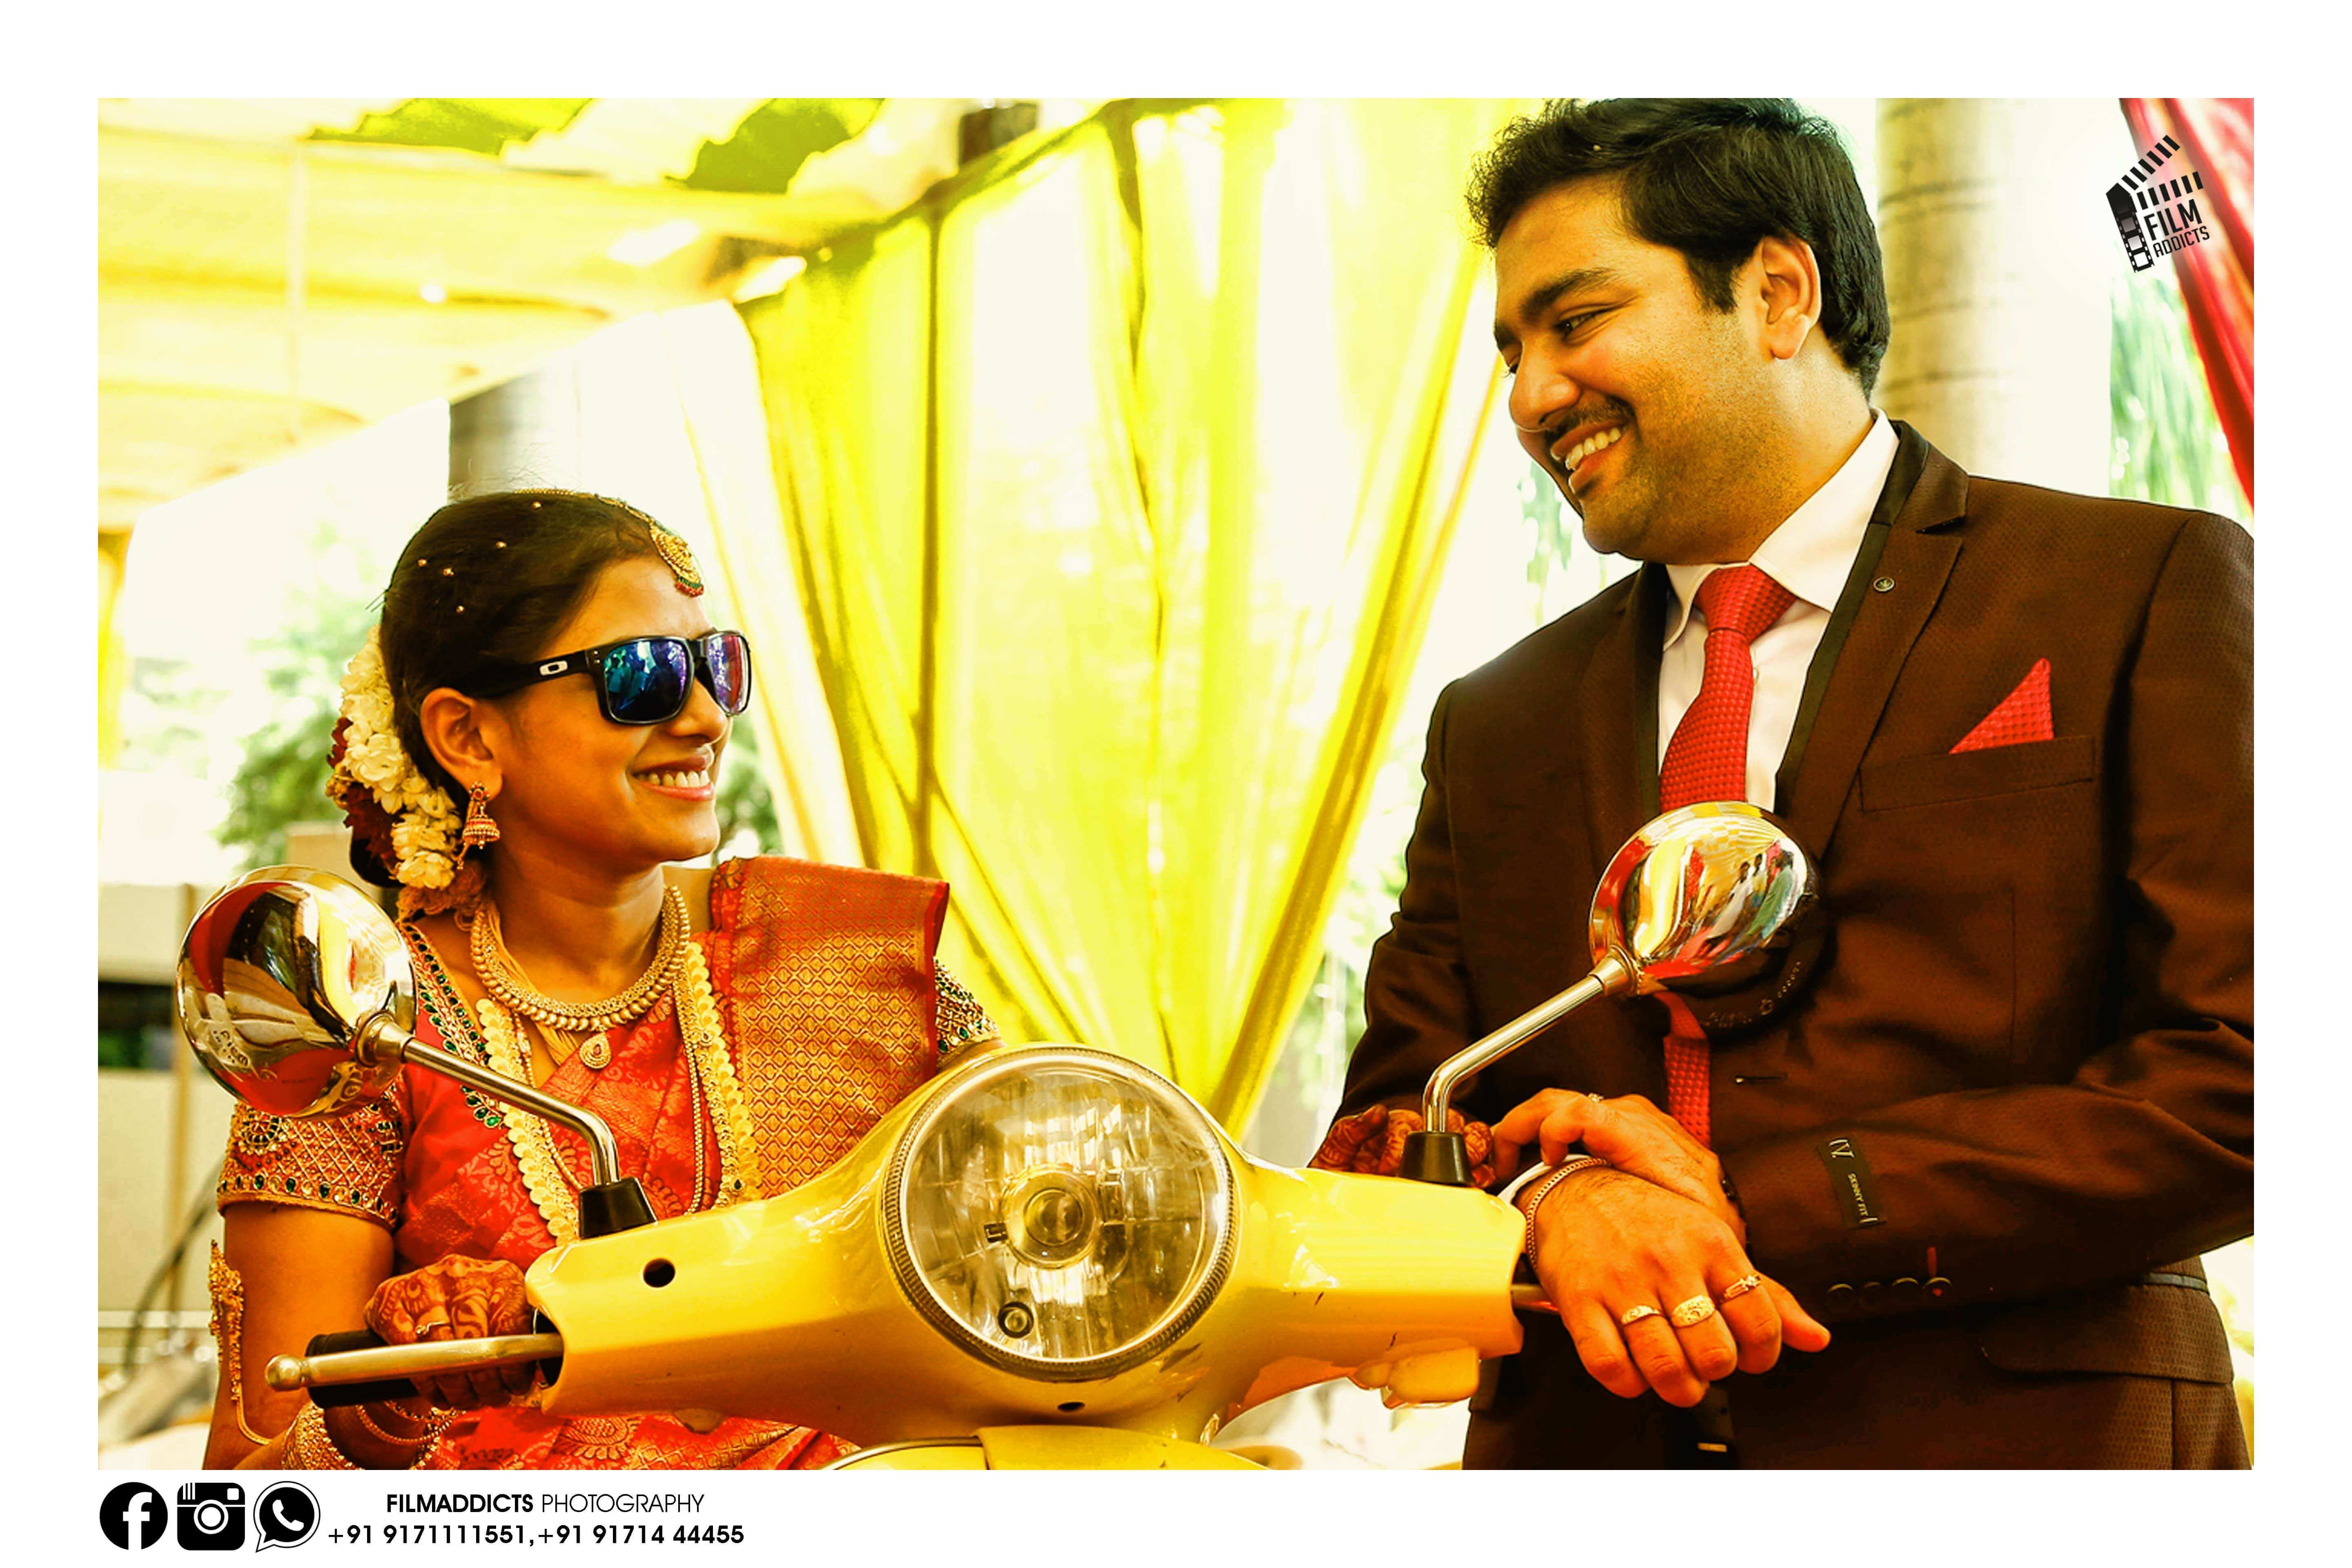 Best-wedding-cinimatography-in-madurai,Best-wedding-cinimatographer-in-madurai